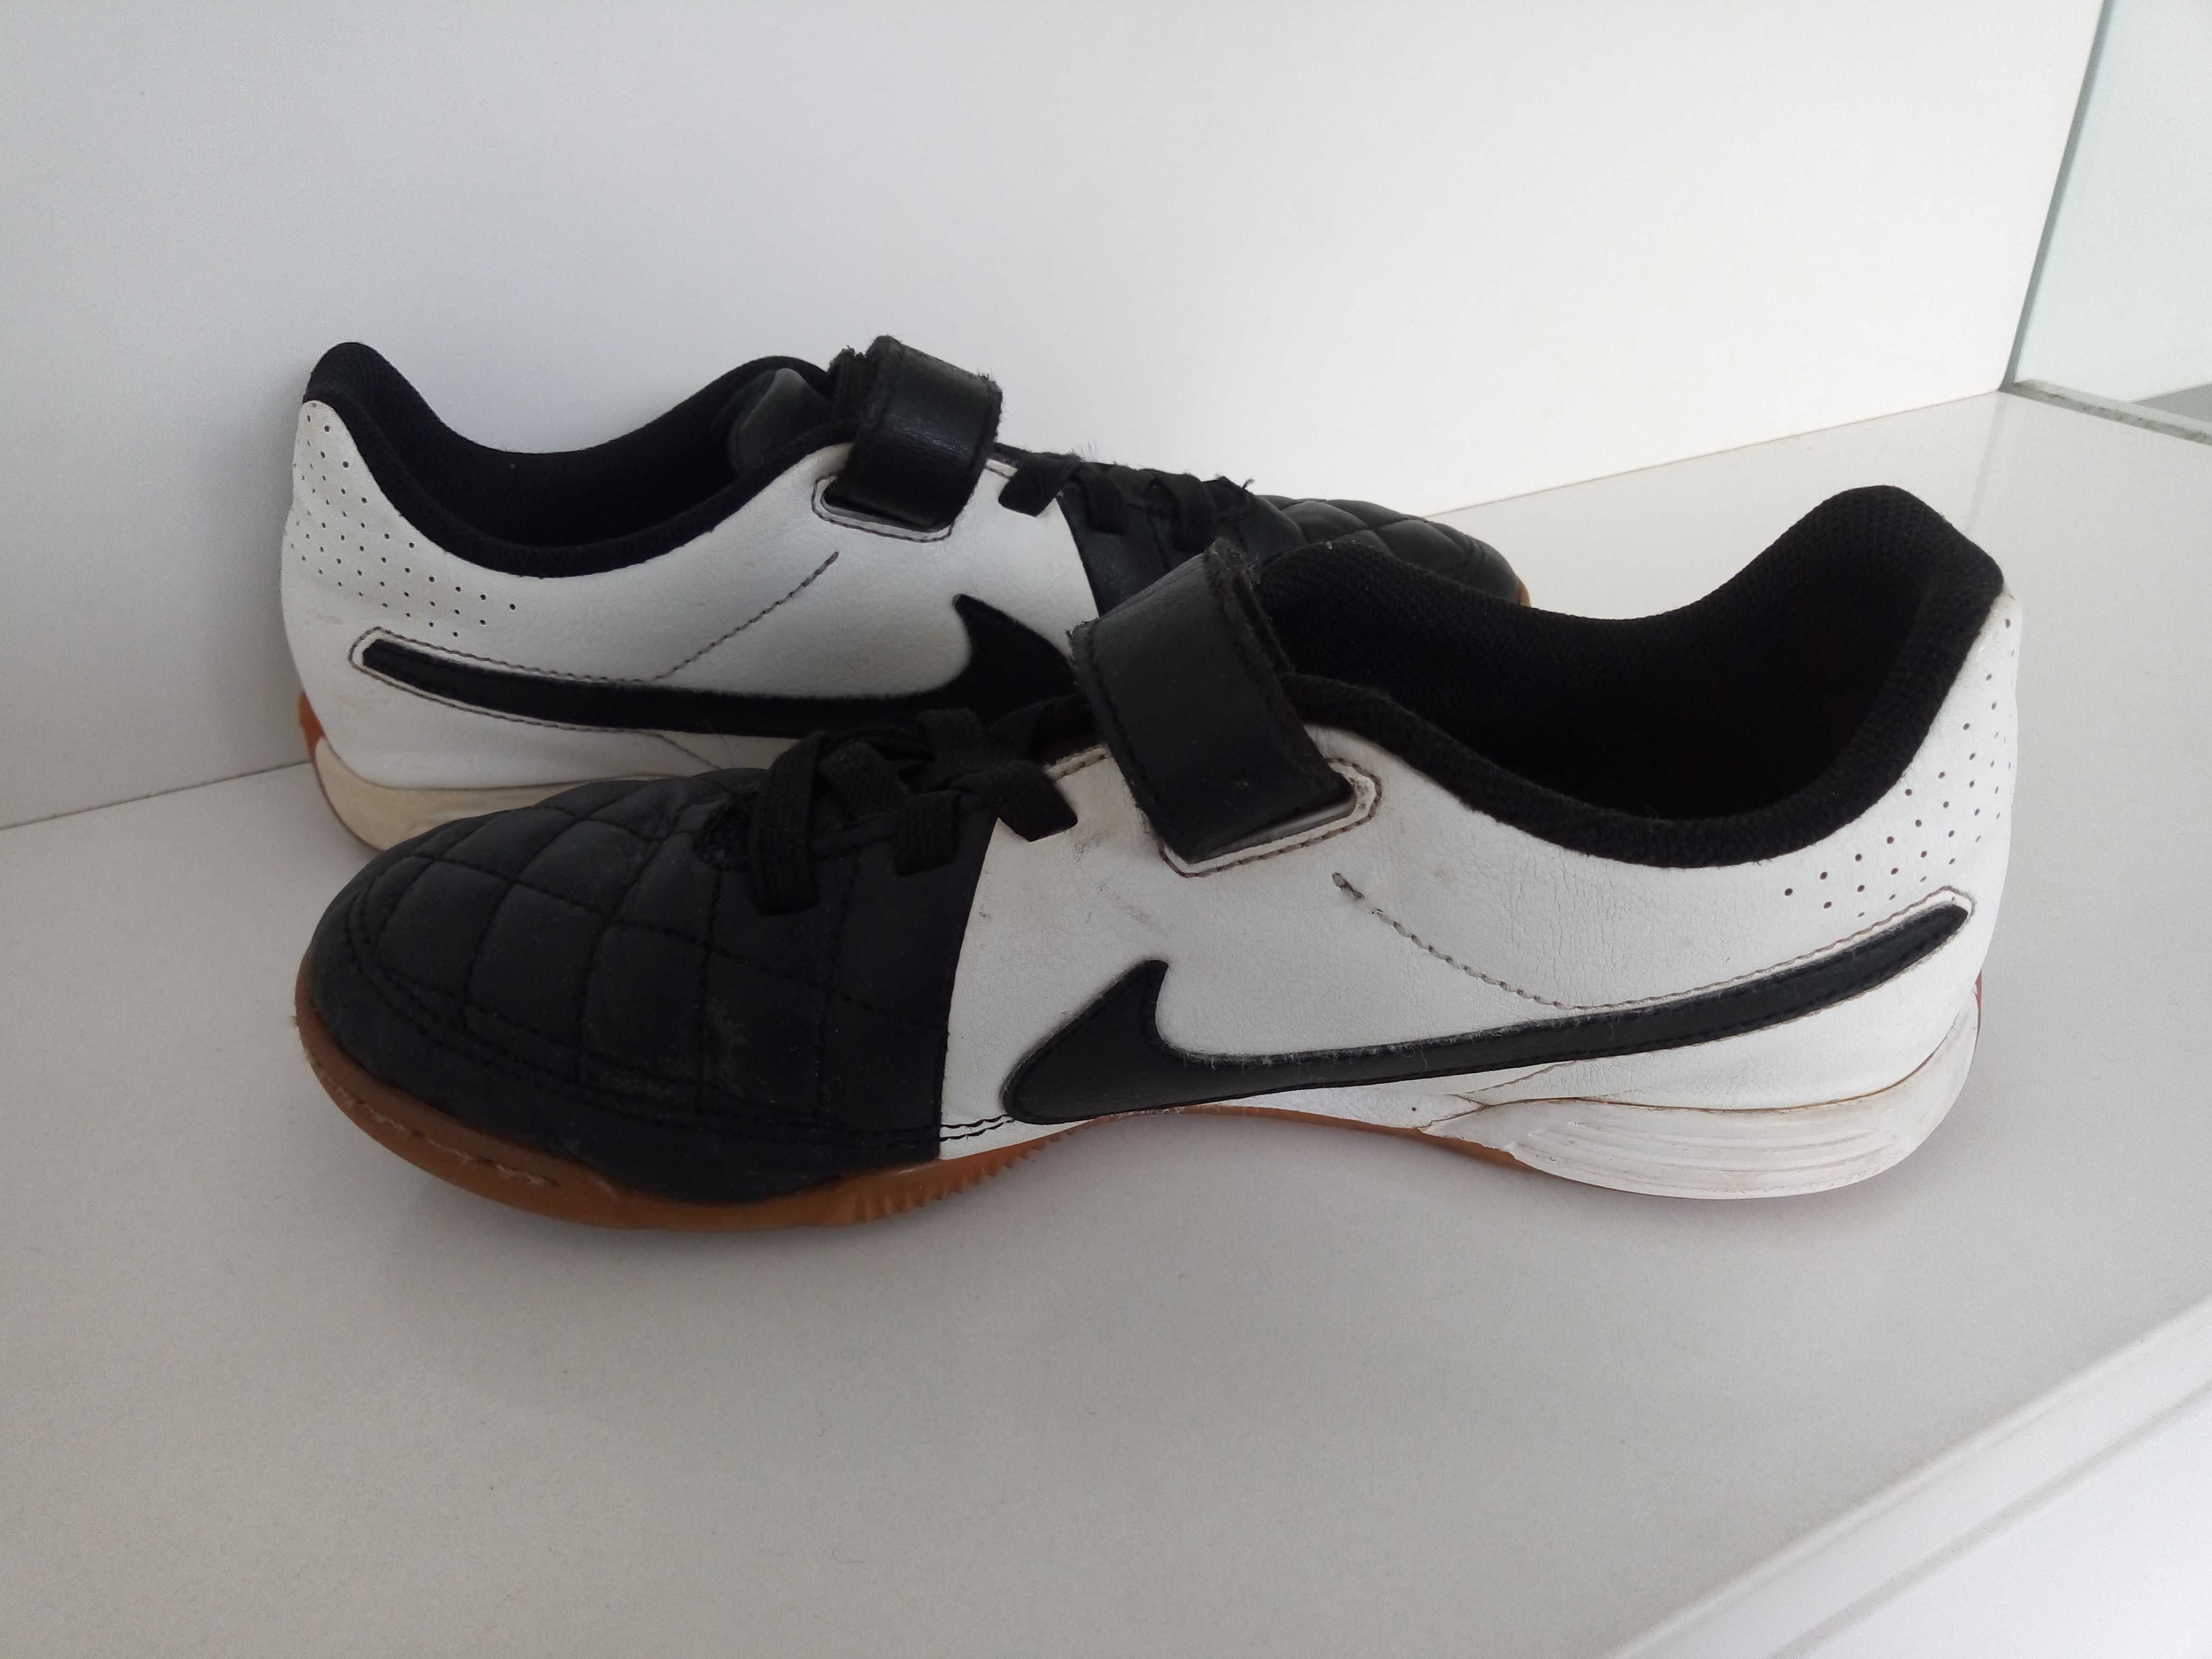 Sapatilhas futsal marca Nike tamanho 36.5, pretas e brancas